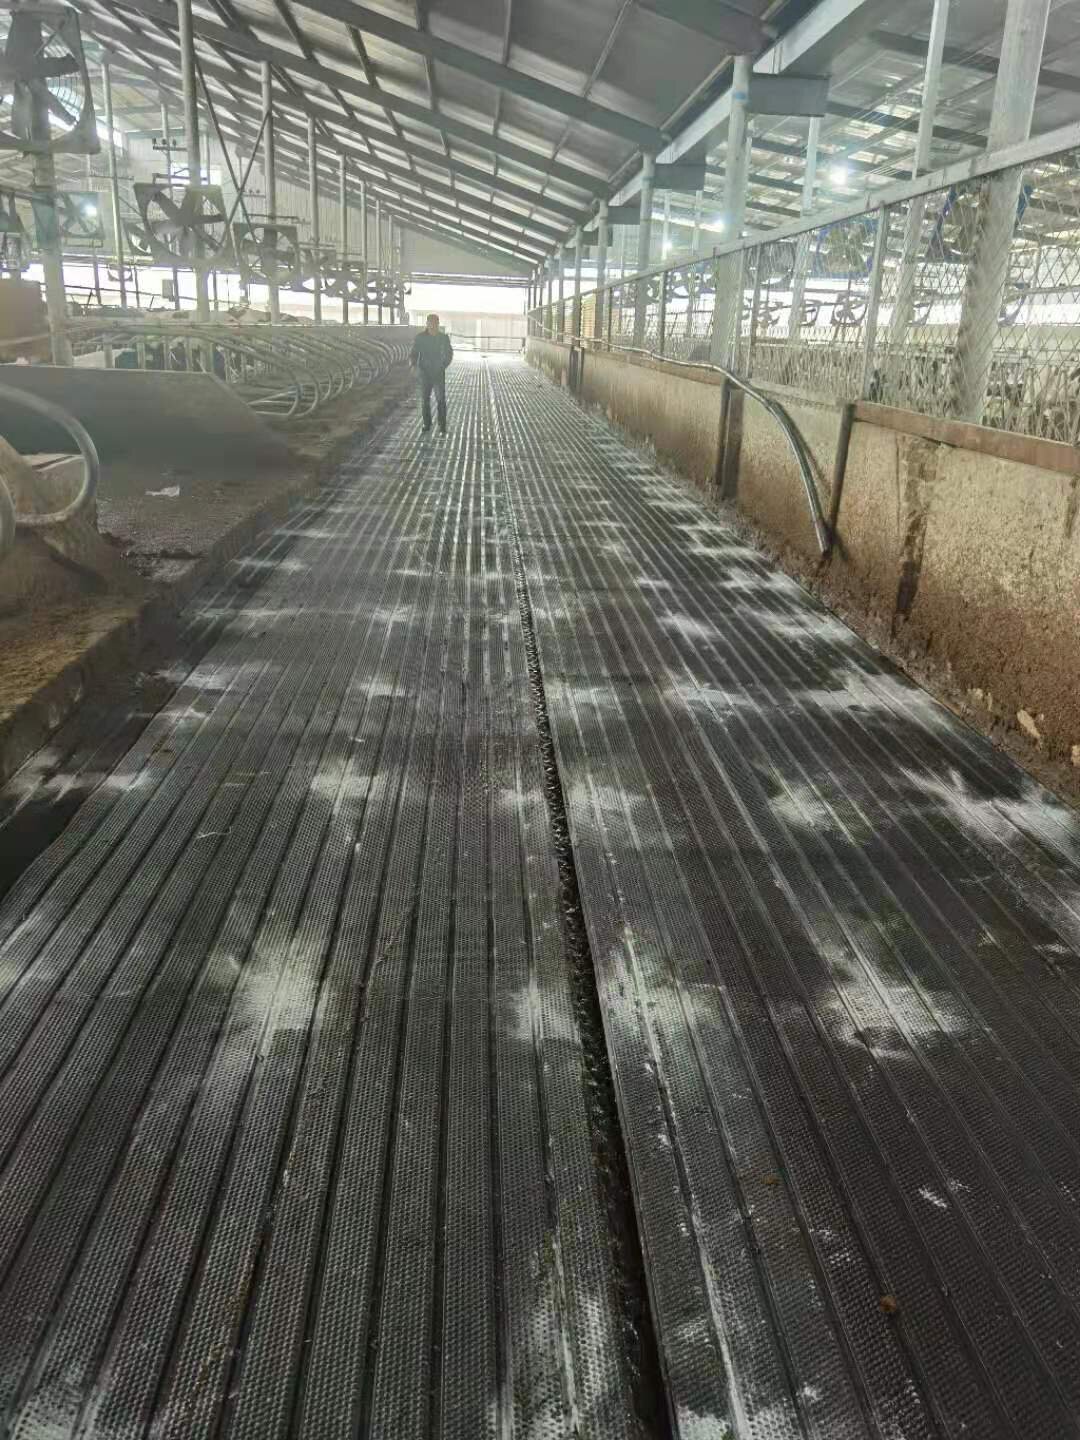 Photos of the flooring installed on a farm (4).jpg